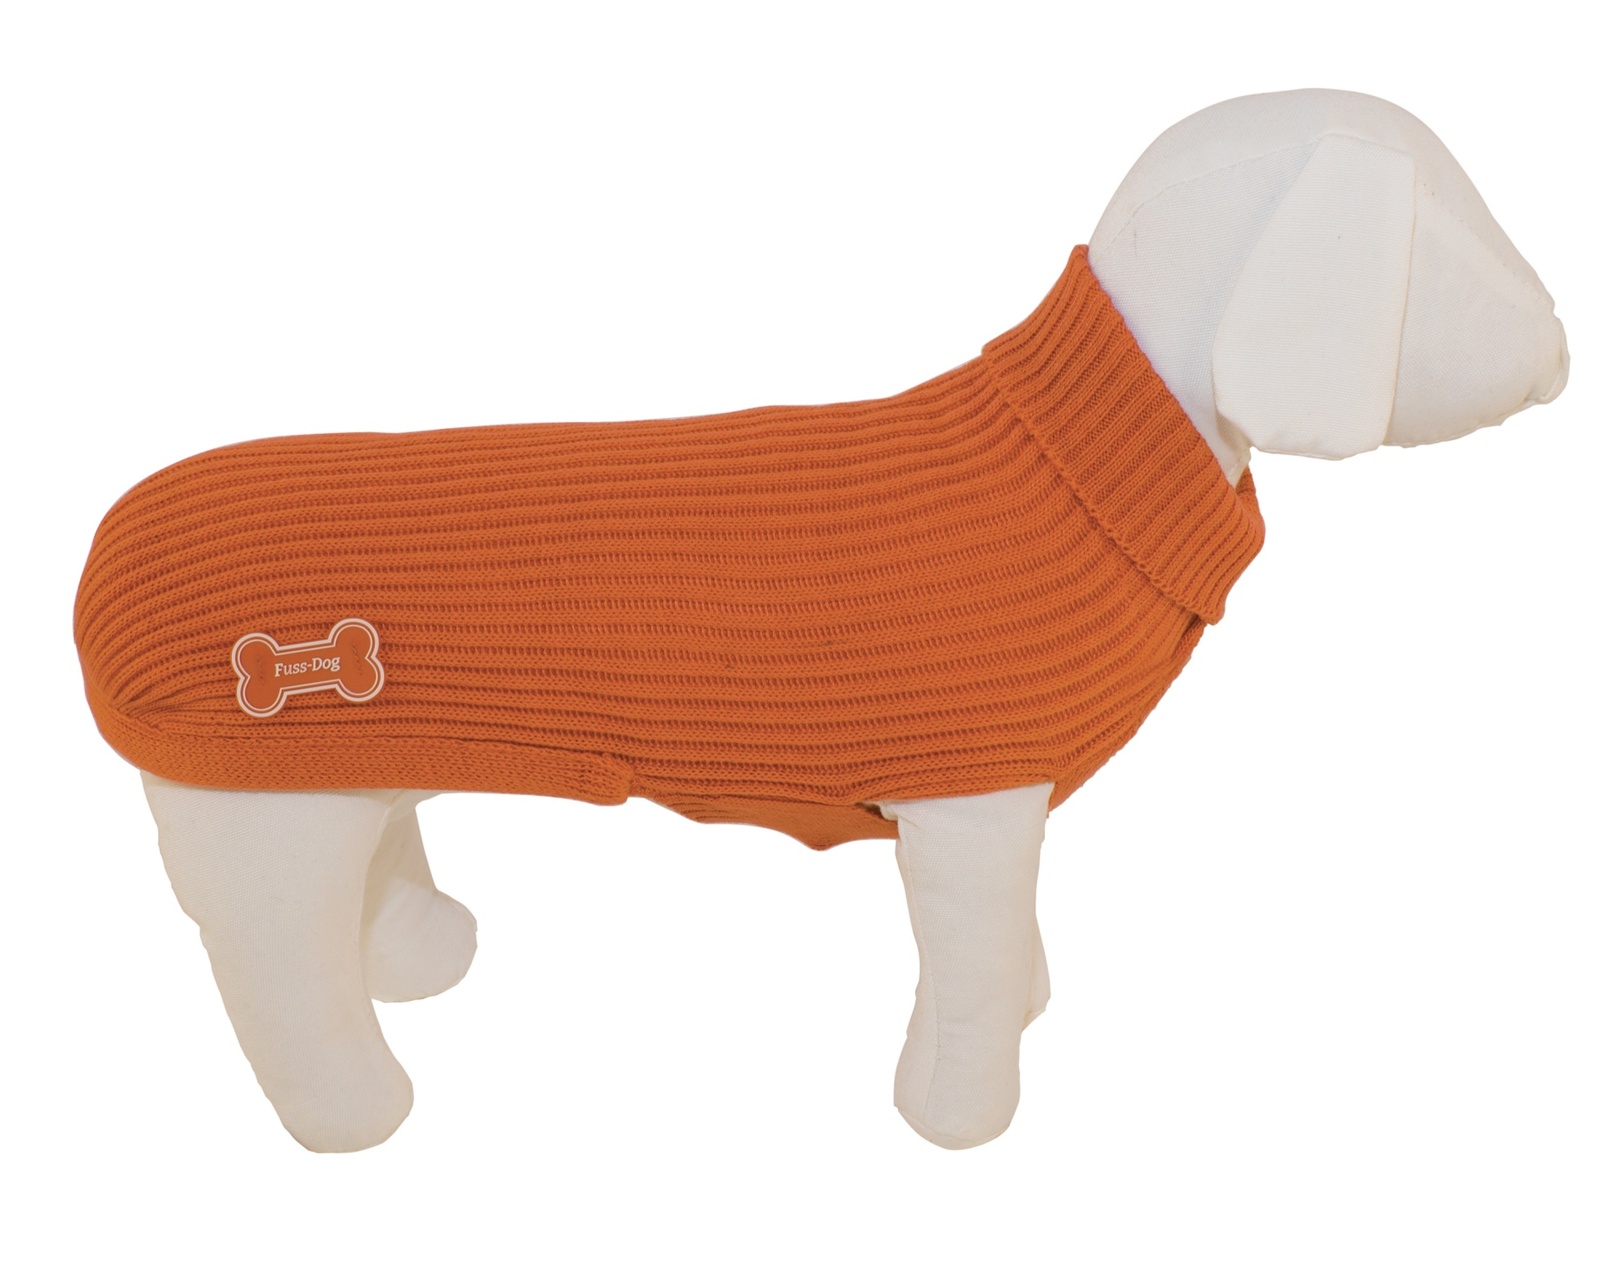 Ferribiella одежда Ferribiella одежда свитер Люкс, апельсиновый (19 см) ferribiella одежда ferribiella одежда свитер белла песочный 19 см